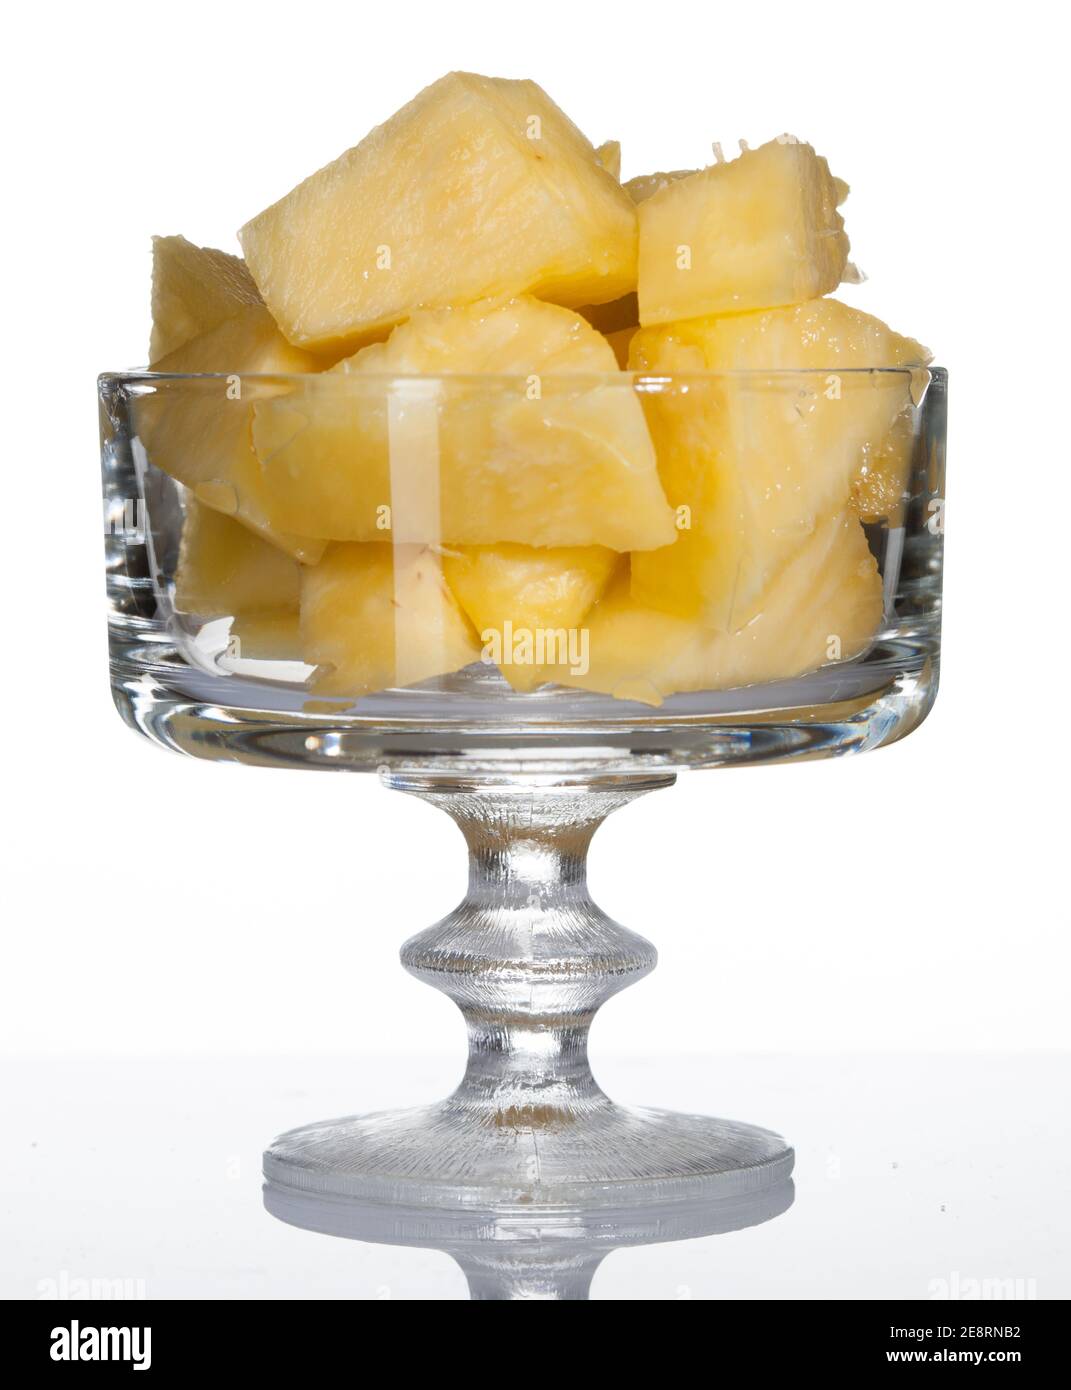 Pineapple, Ananas (Ananas comosus) Stock Photo